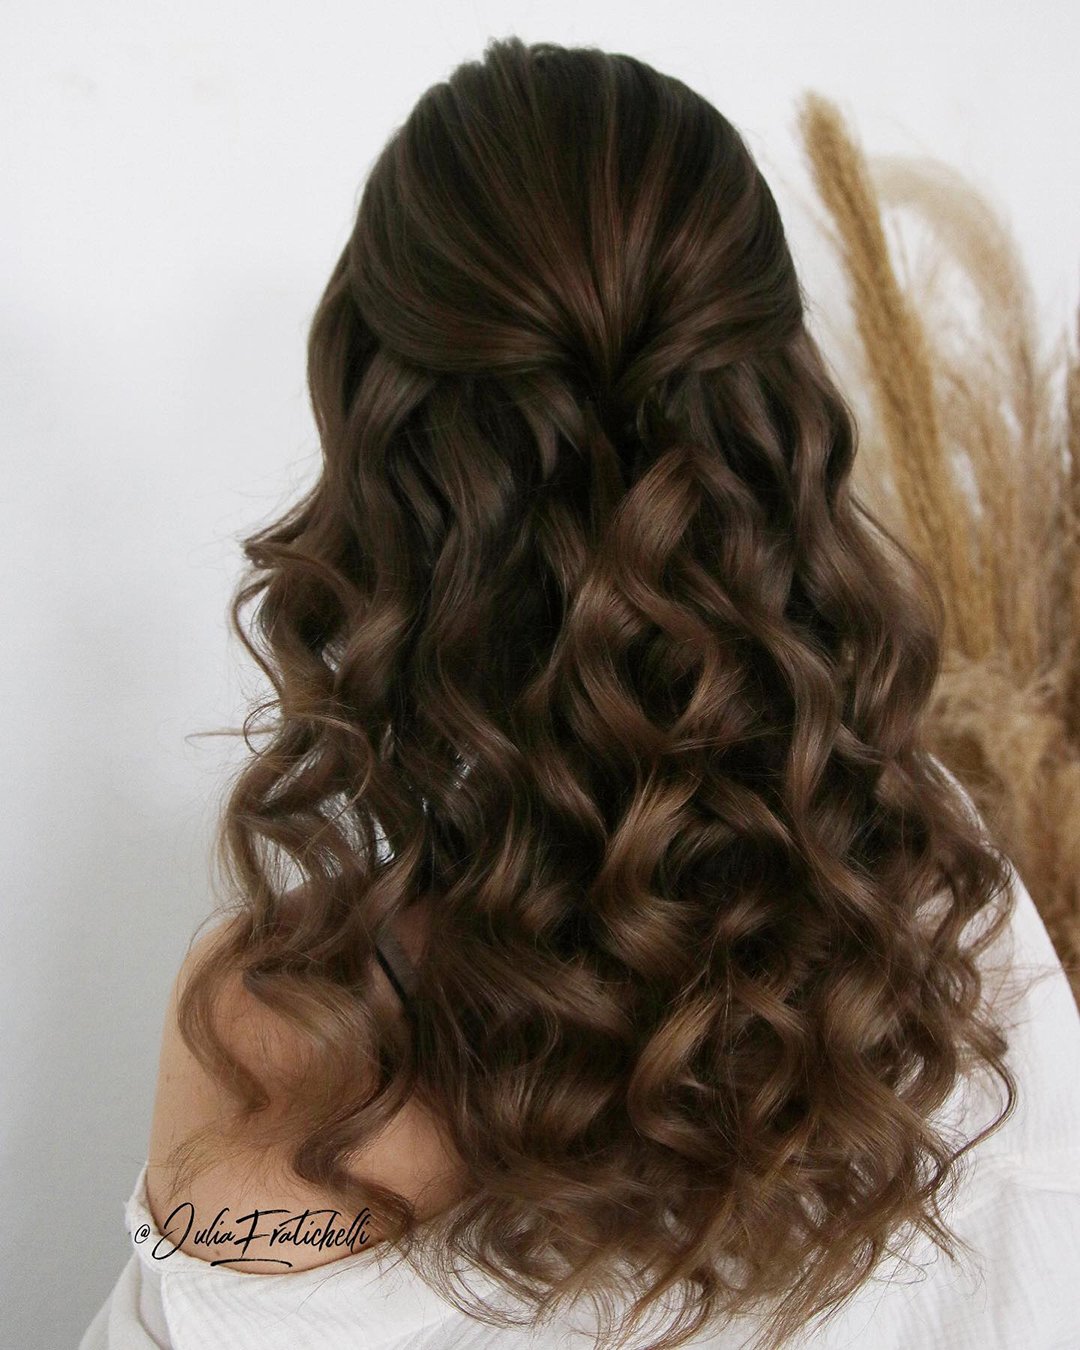 winter wedding hairstyles curly dark hair juliafratichelli.bridalstylist